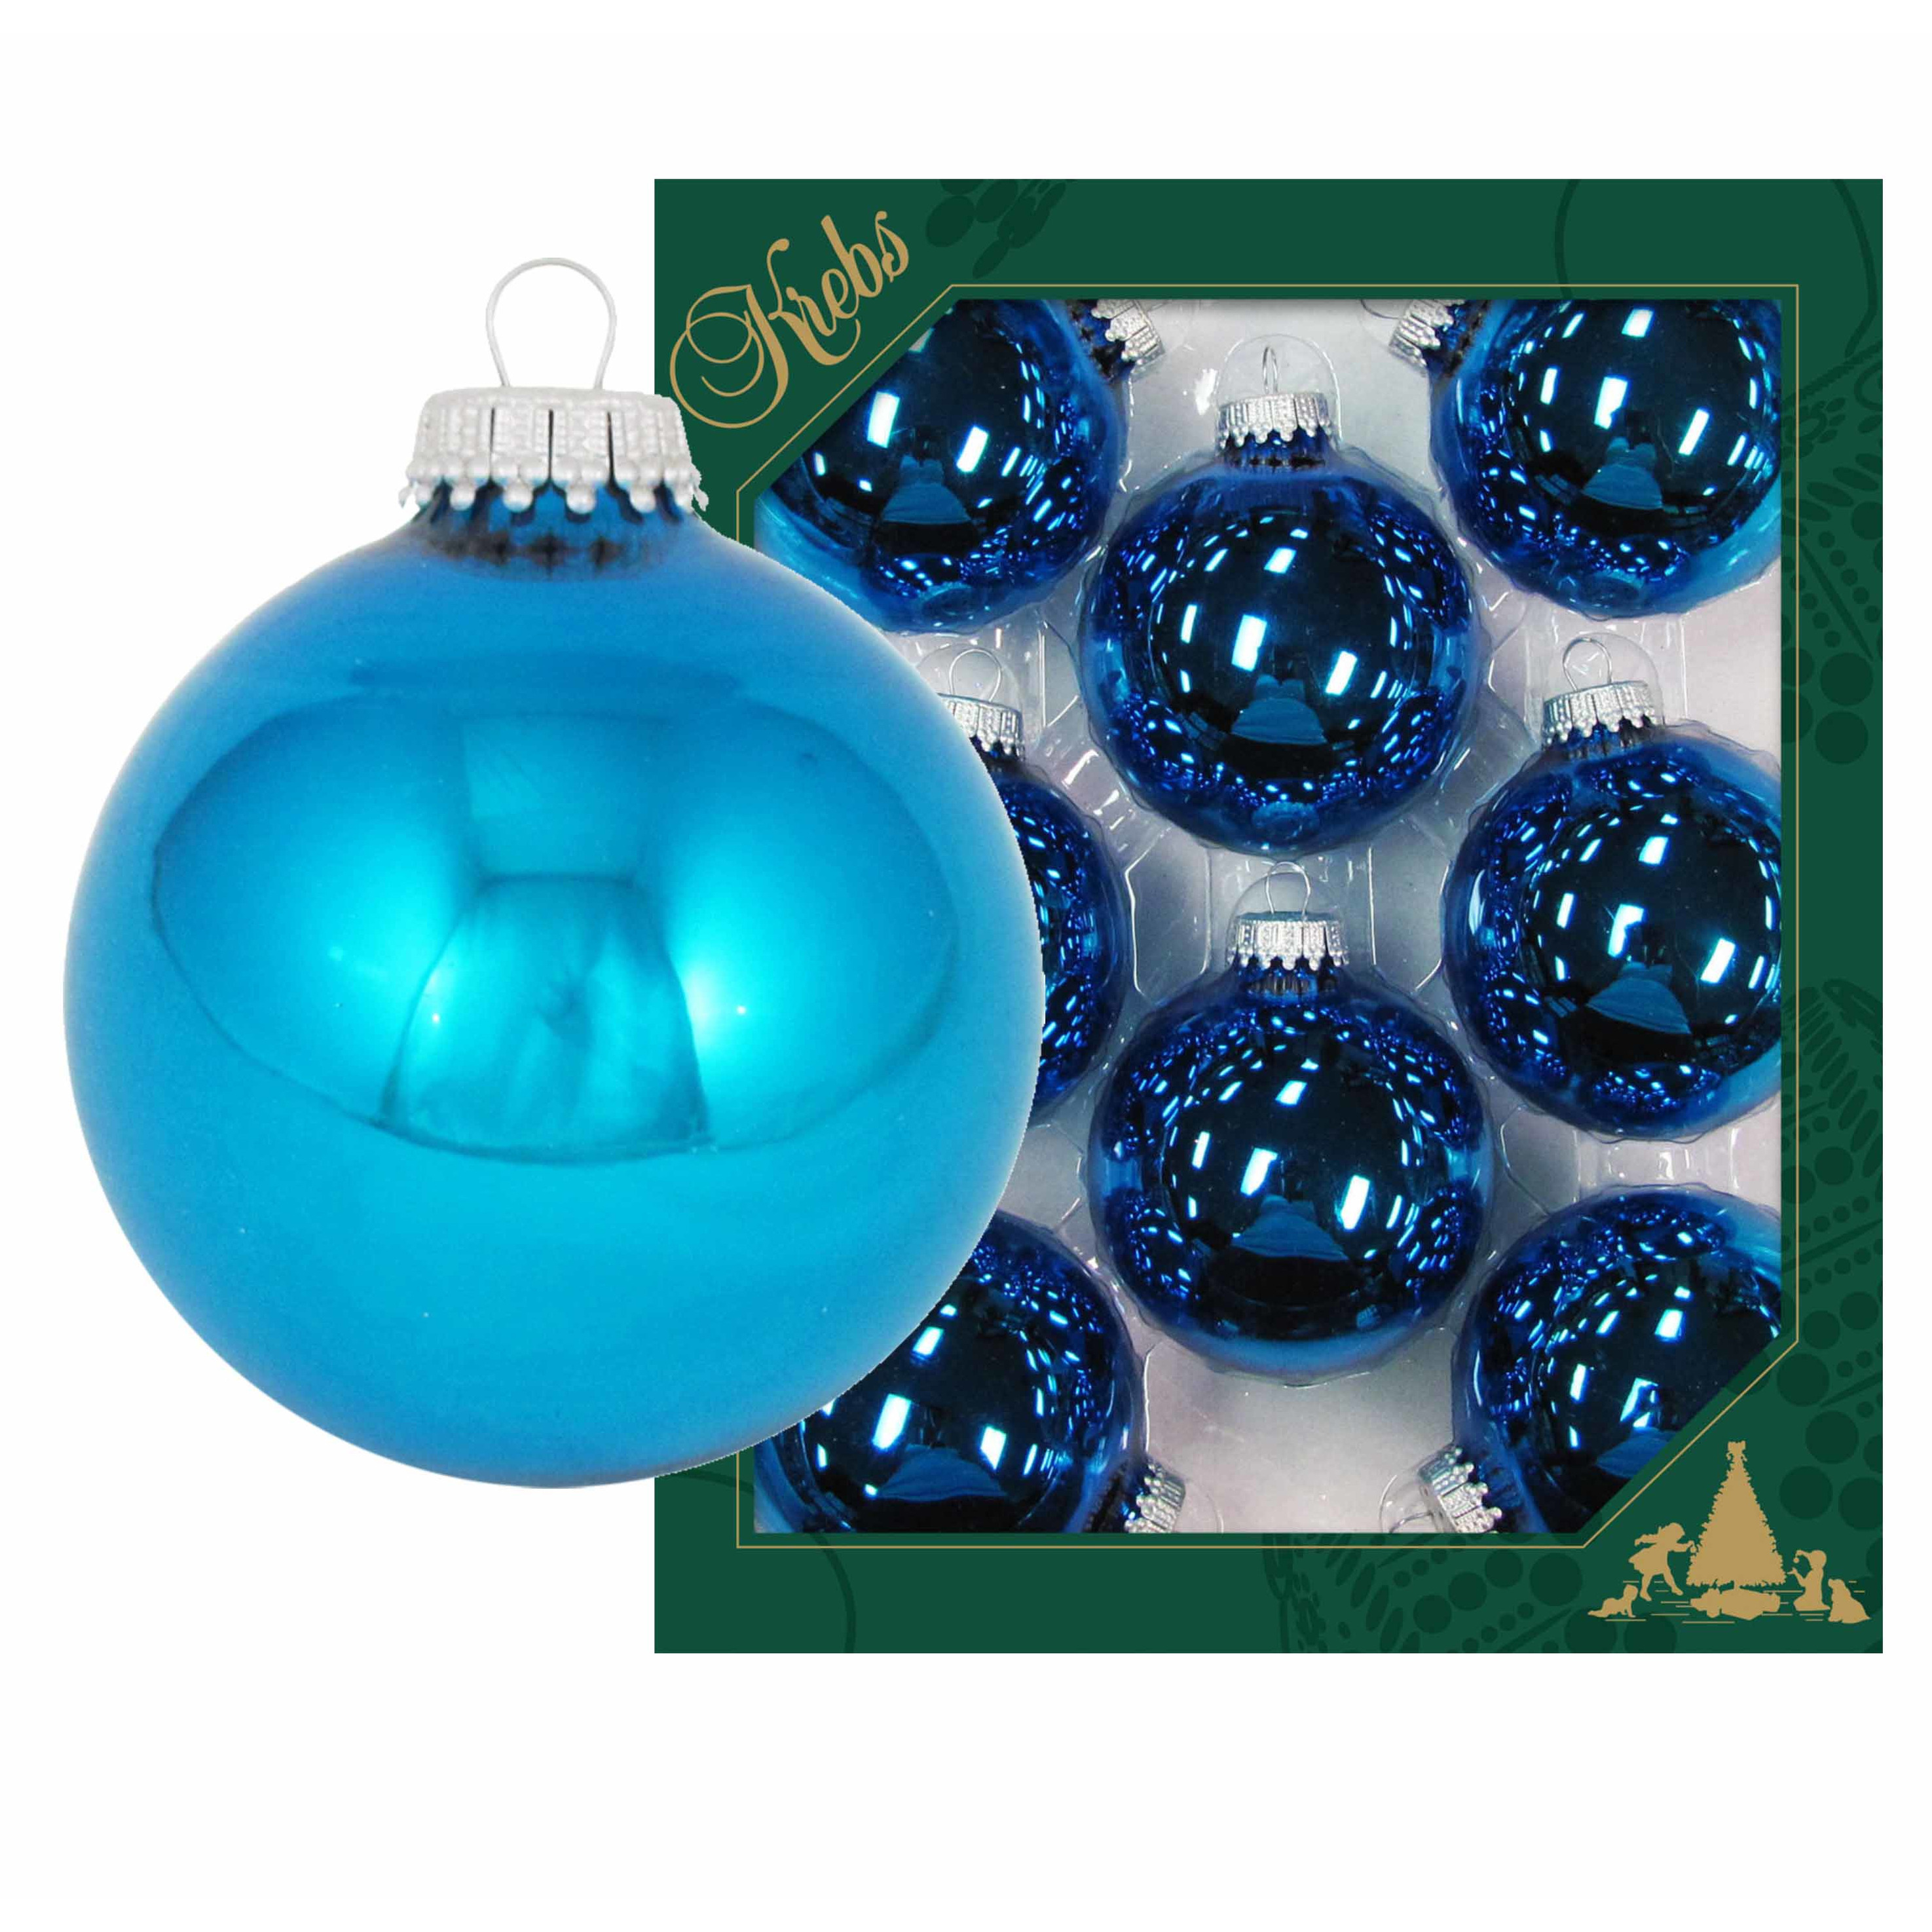 8x Hawaii blauwe glazen kerstballen glans 7 cm kerstboomversiering